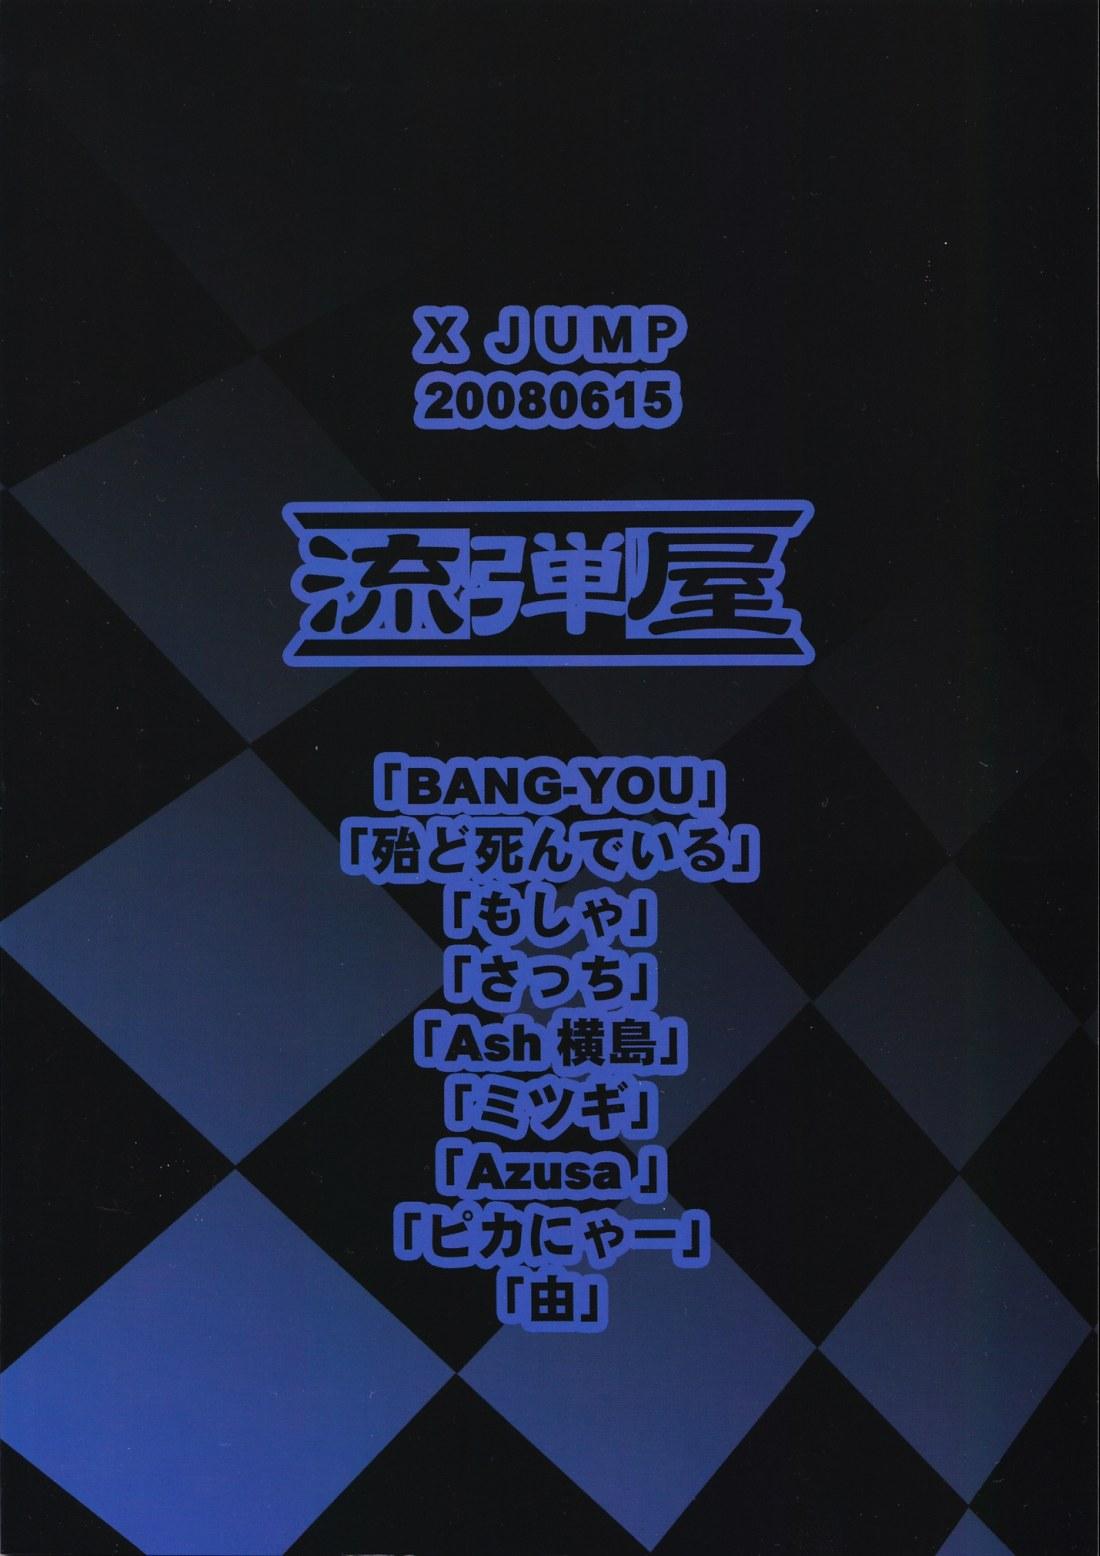 X JUMP 2008 6 49